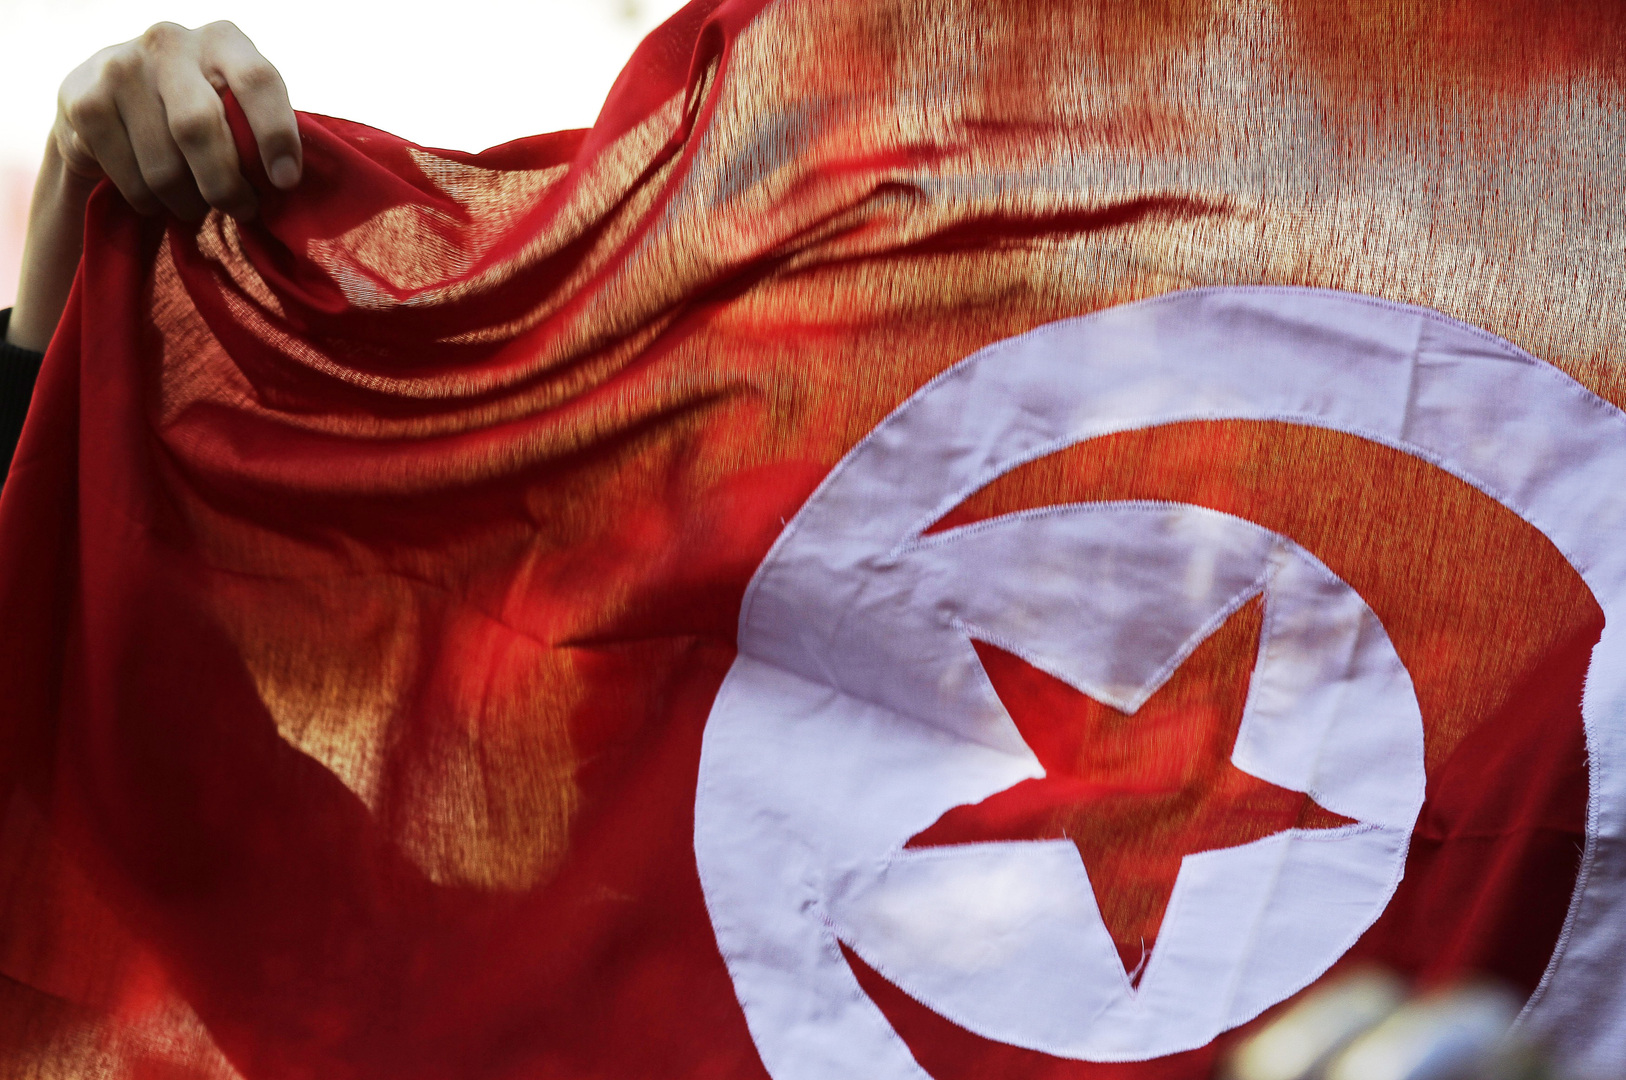 مشروع قرار تونسي بمجلس الأمن الدولي يطالب إثيوبيا بوقف ملء سد النهضة